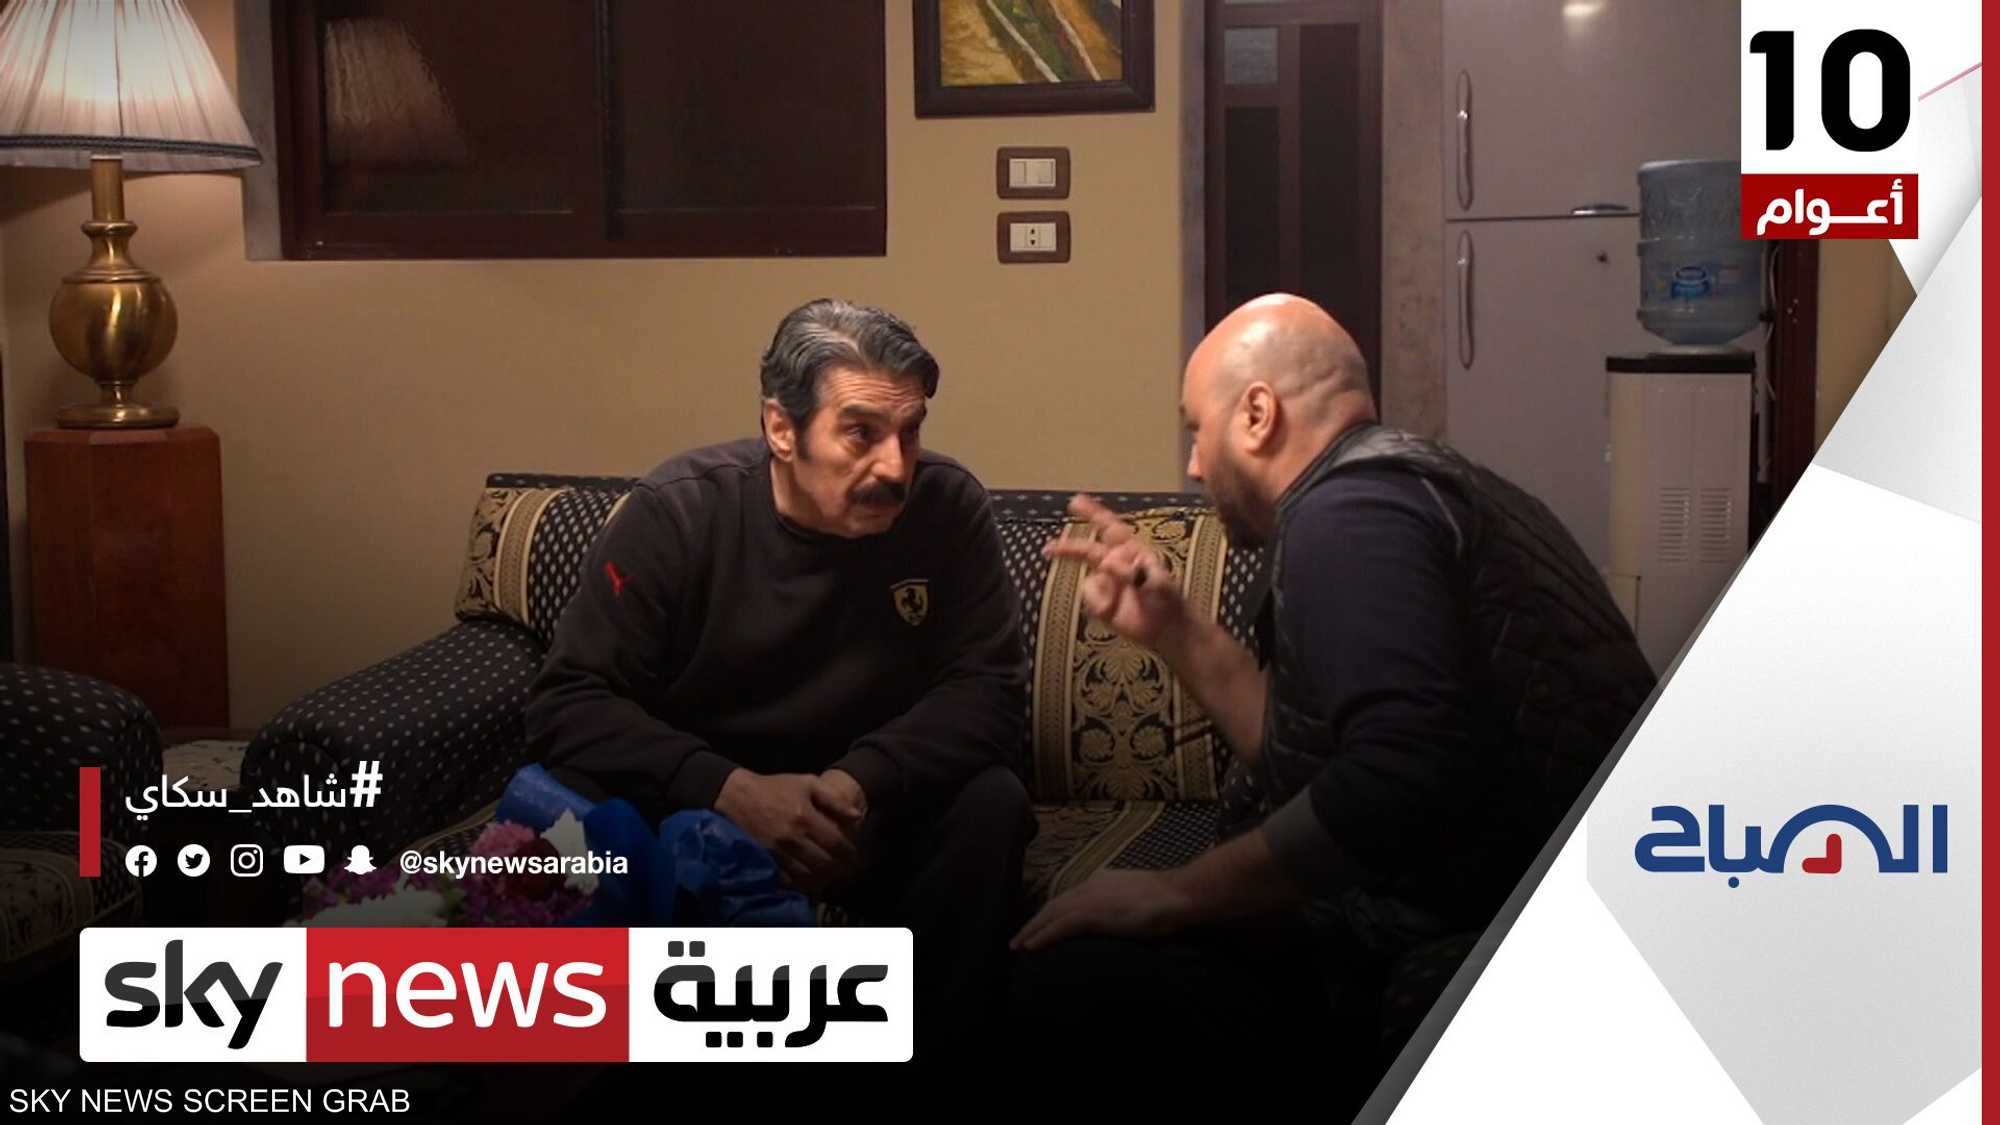 حوار ثري عن الدراما السورية والفن والإنتاج مع عباس النوري